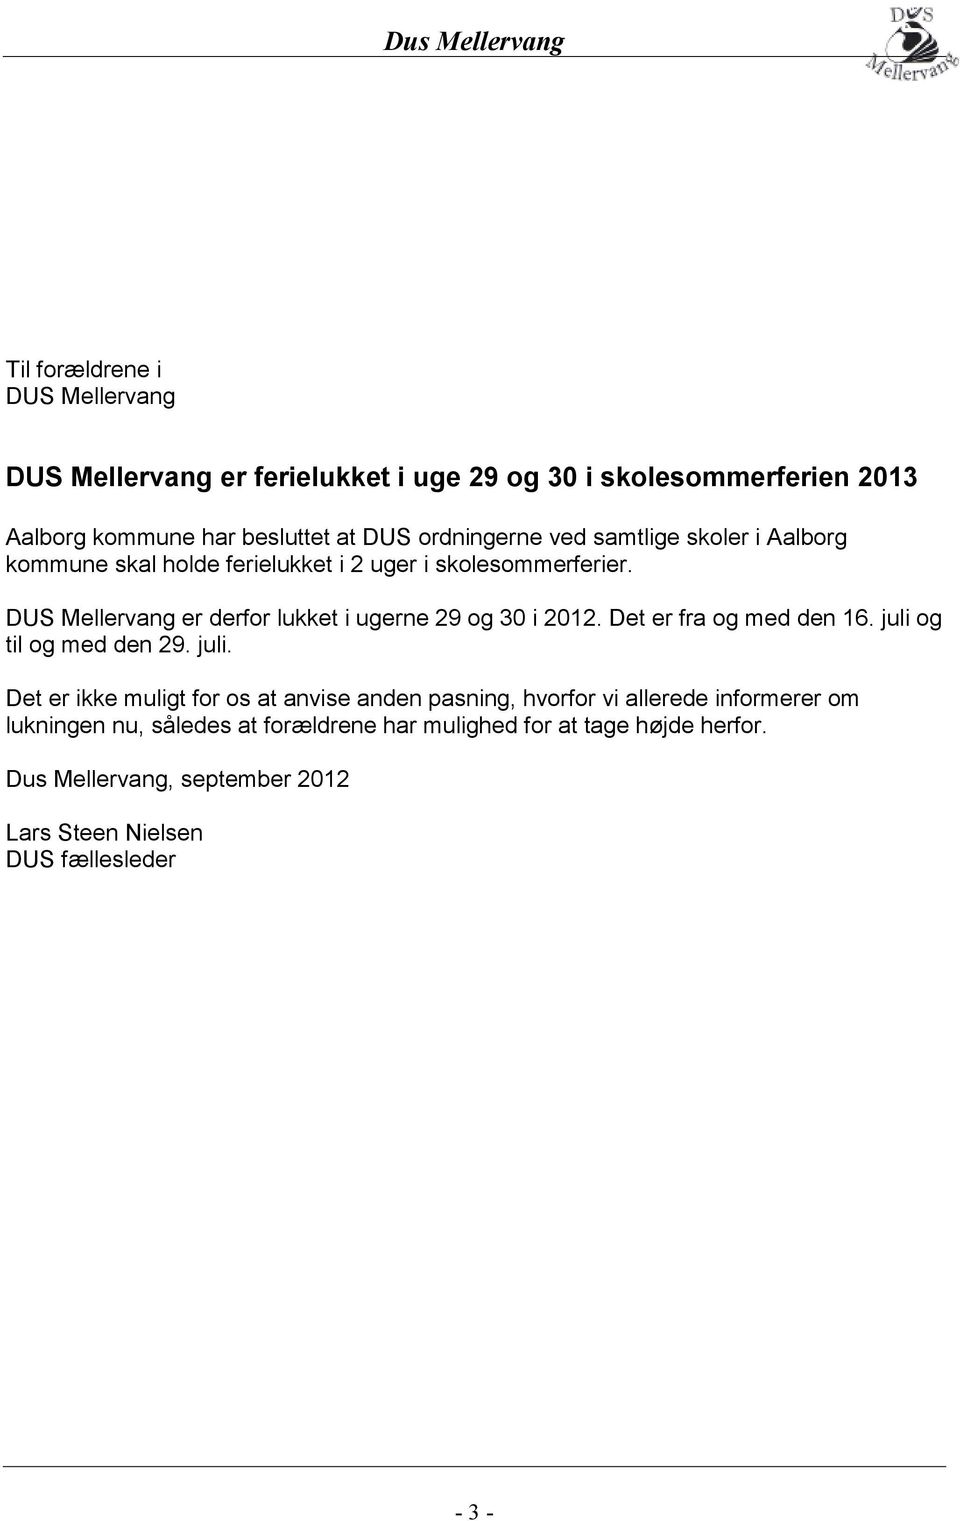 DUS Mellervang er derfor lukket i ugerne 29 og 30 i 2012. Det er fra og med den 16. juli 